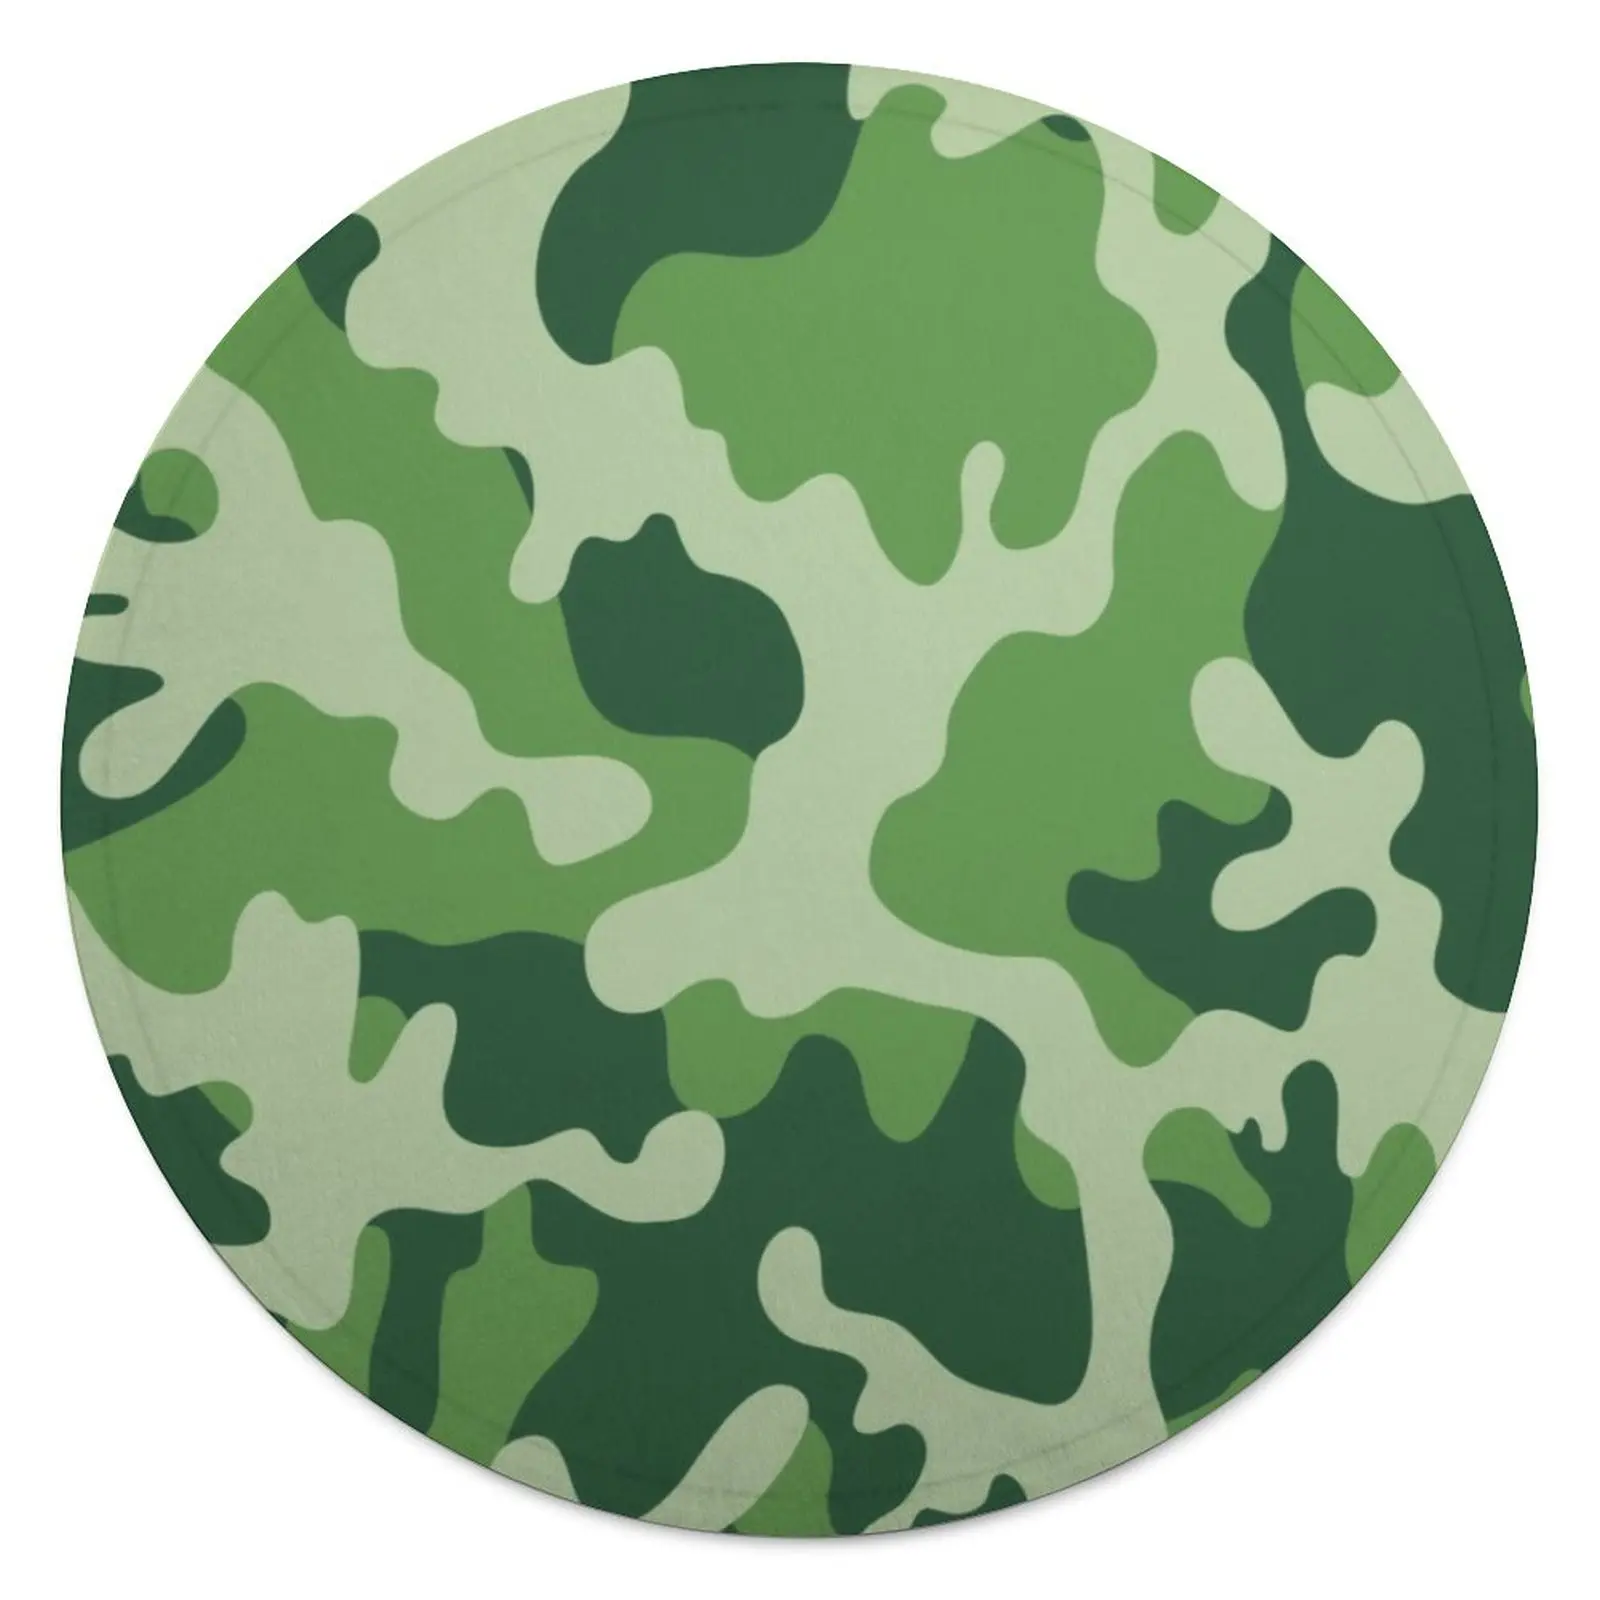 

Одеяло камуфляжное военное, зеленое цветное круглое Флисовое одеяло с камуфляжным принтом, супермягкое Дешевое покрывало для автомобиля